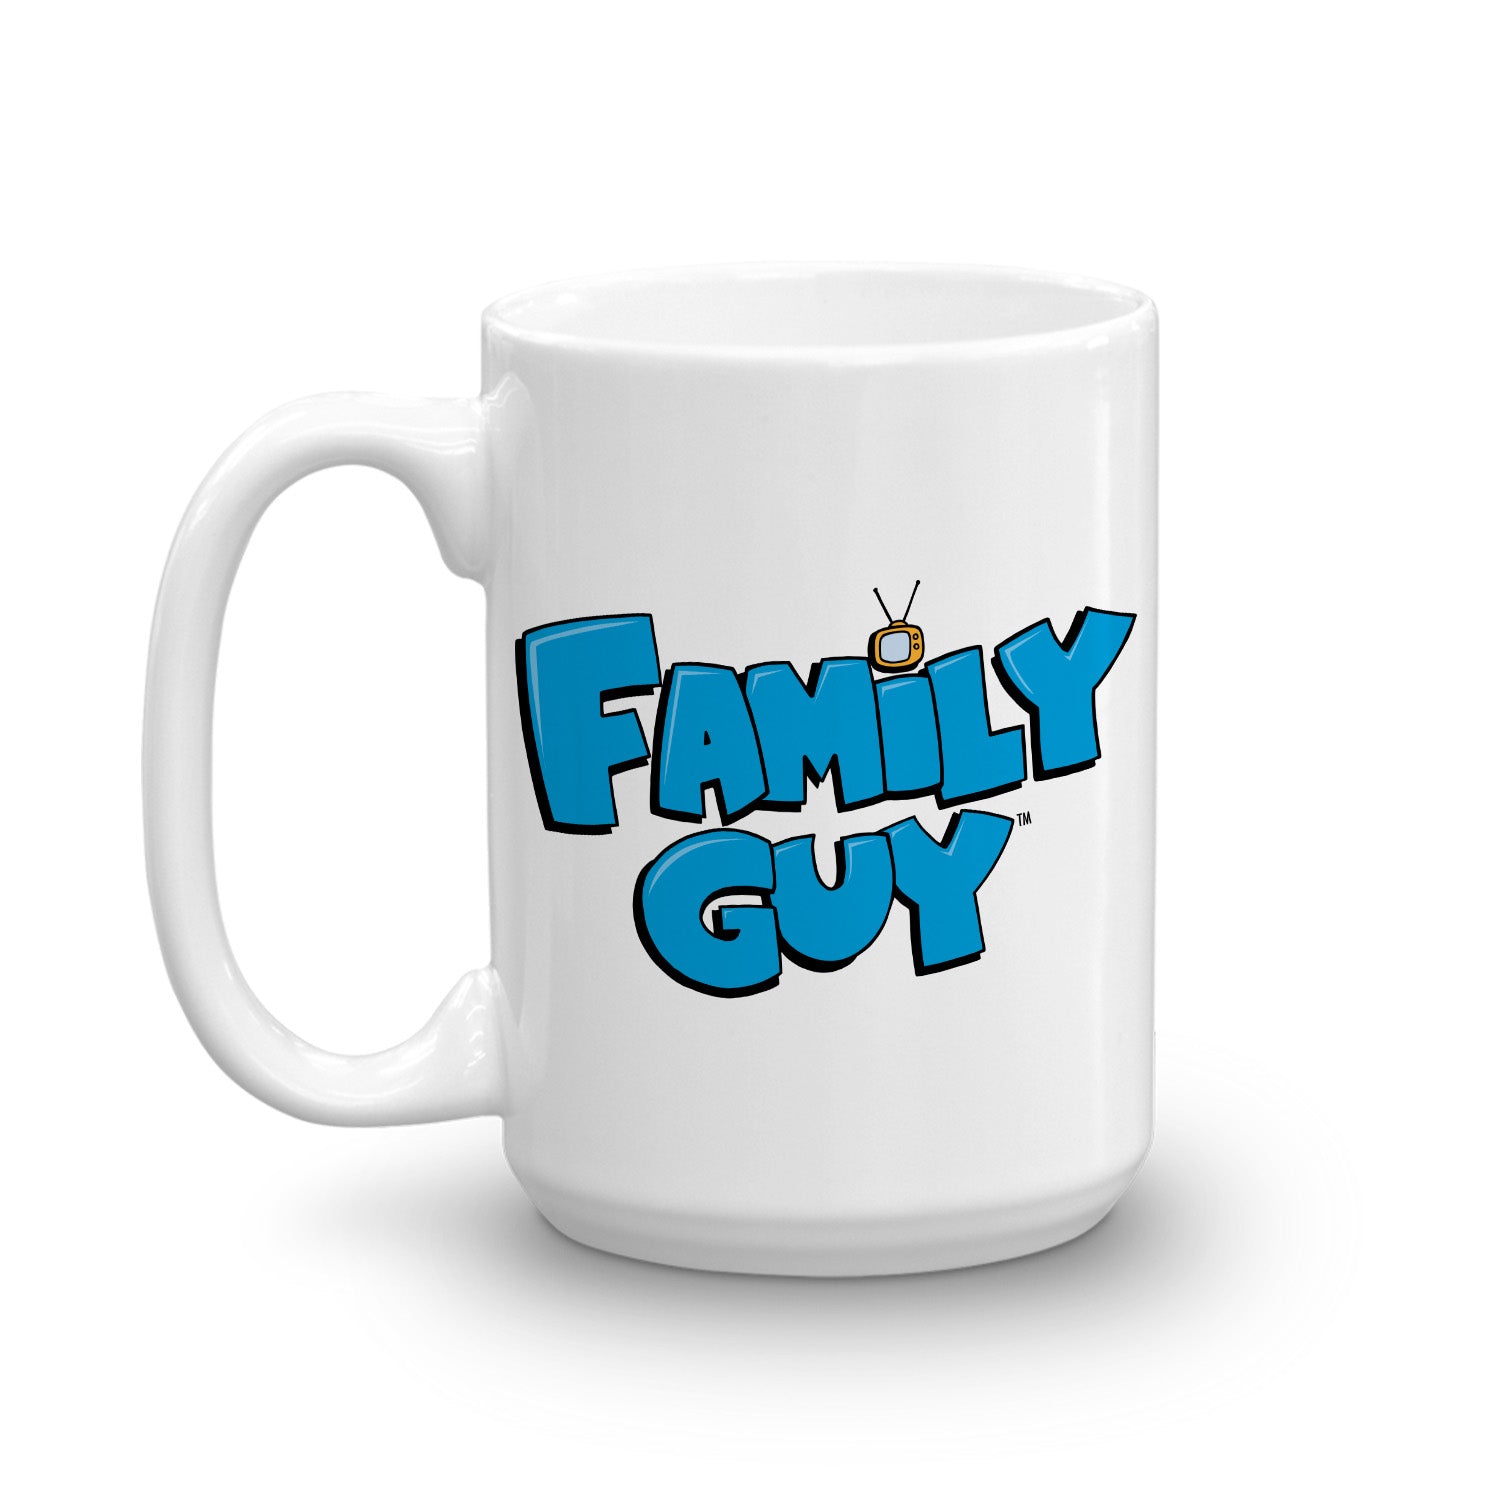 FG LOGO 100976 15 LEFT MF - Family Guy Shop